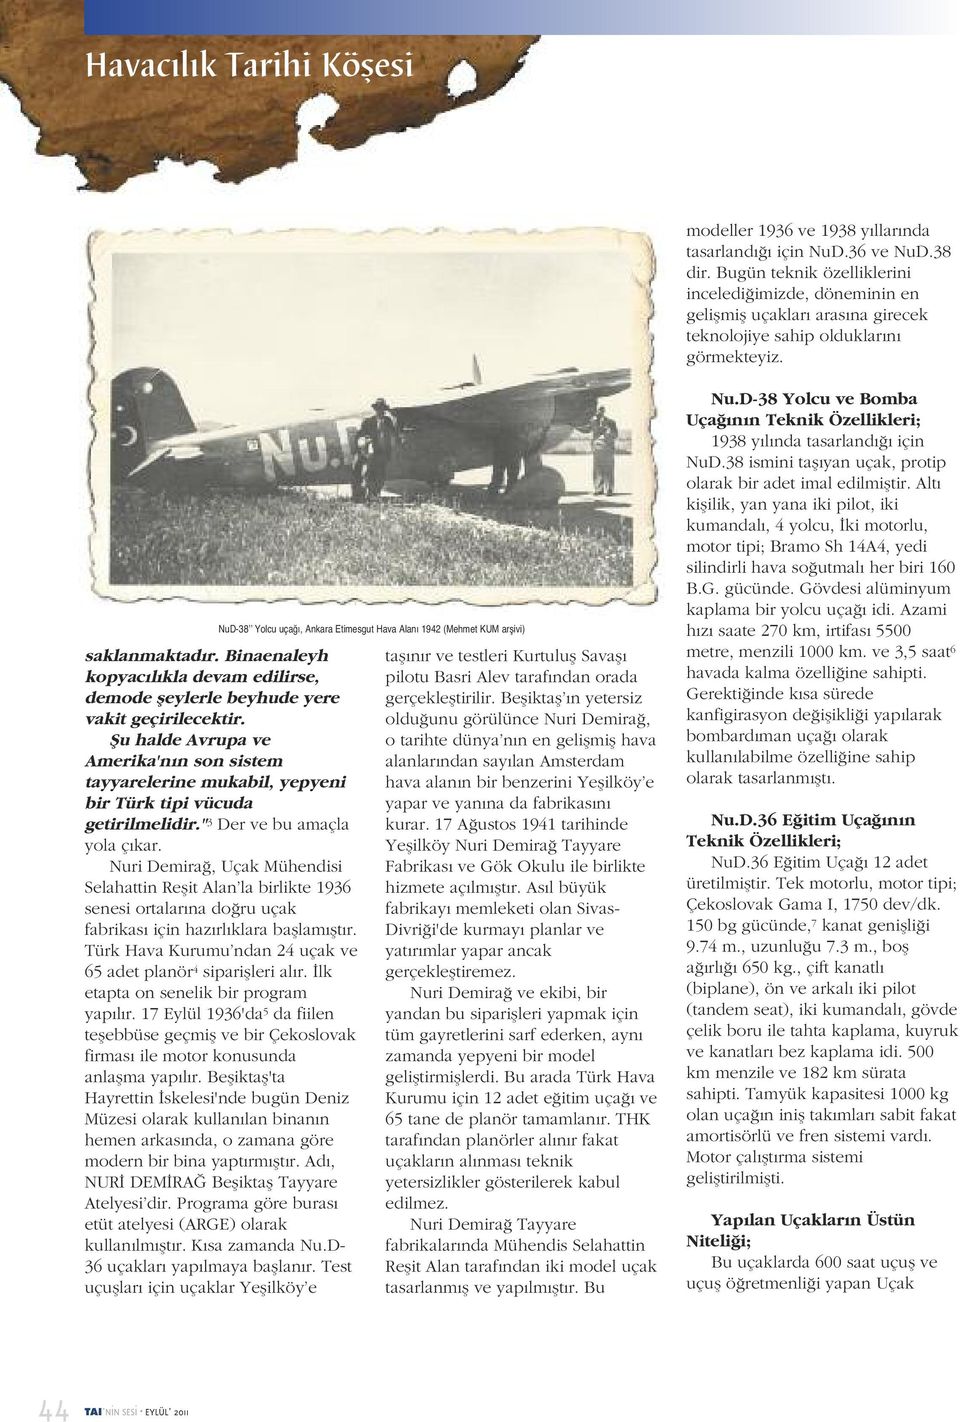 NuD-38 Yolcu uçağı, Ankara Etimesgut Hava Alanı 1942 (Mehmet KUM arşivi) saklanmaktadır. Binaenaleyh kopyacılıkla devam edilirse, demode şeylerle beyhude yere vakit geçirilecektir.